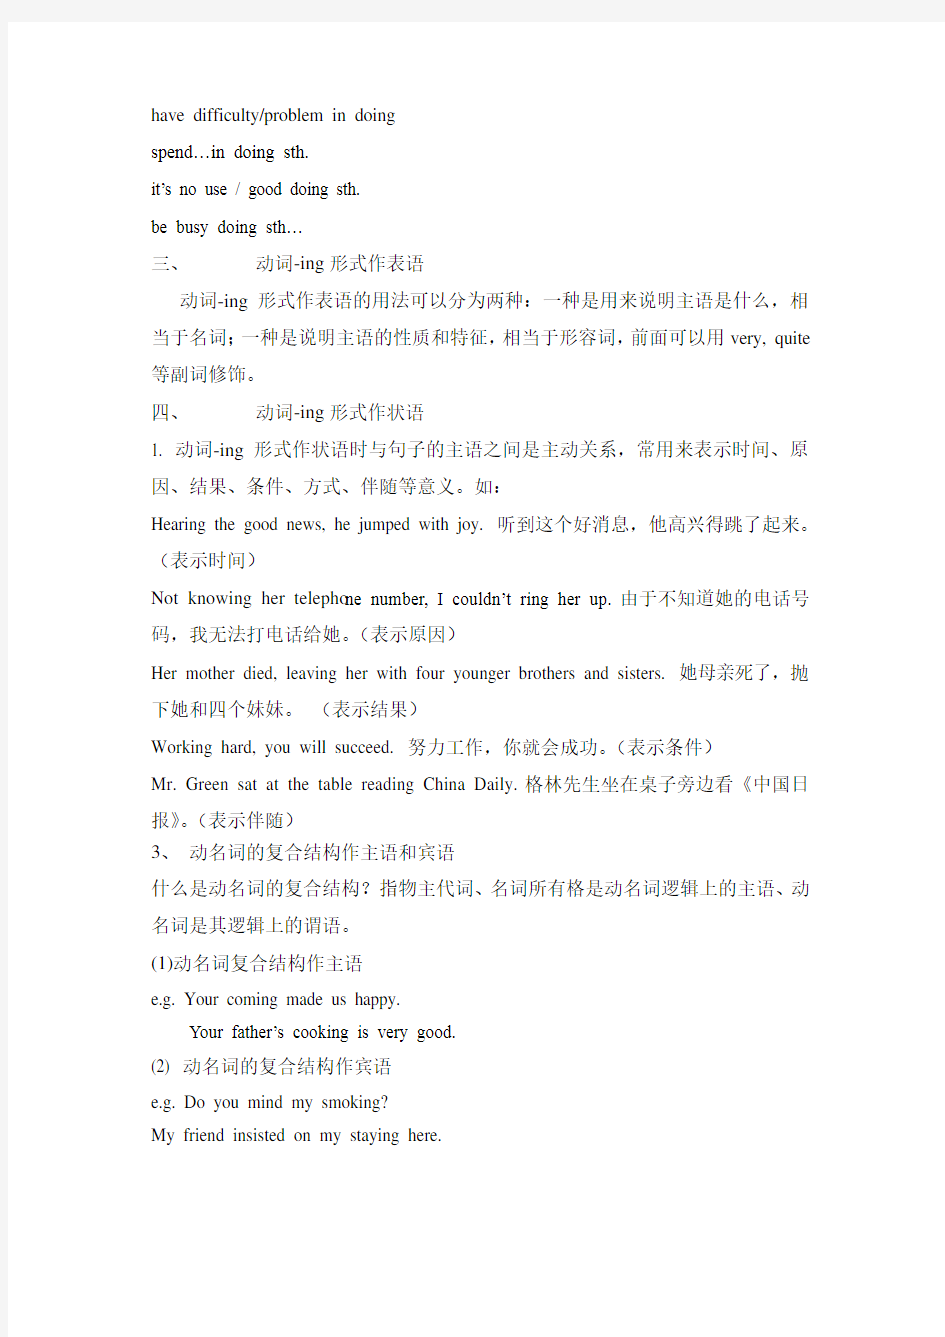 (完整版)新广州英语八年级下册U2bodylanguage语法词汇与练习